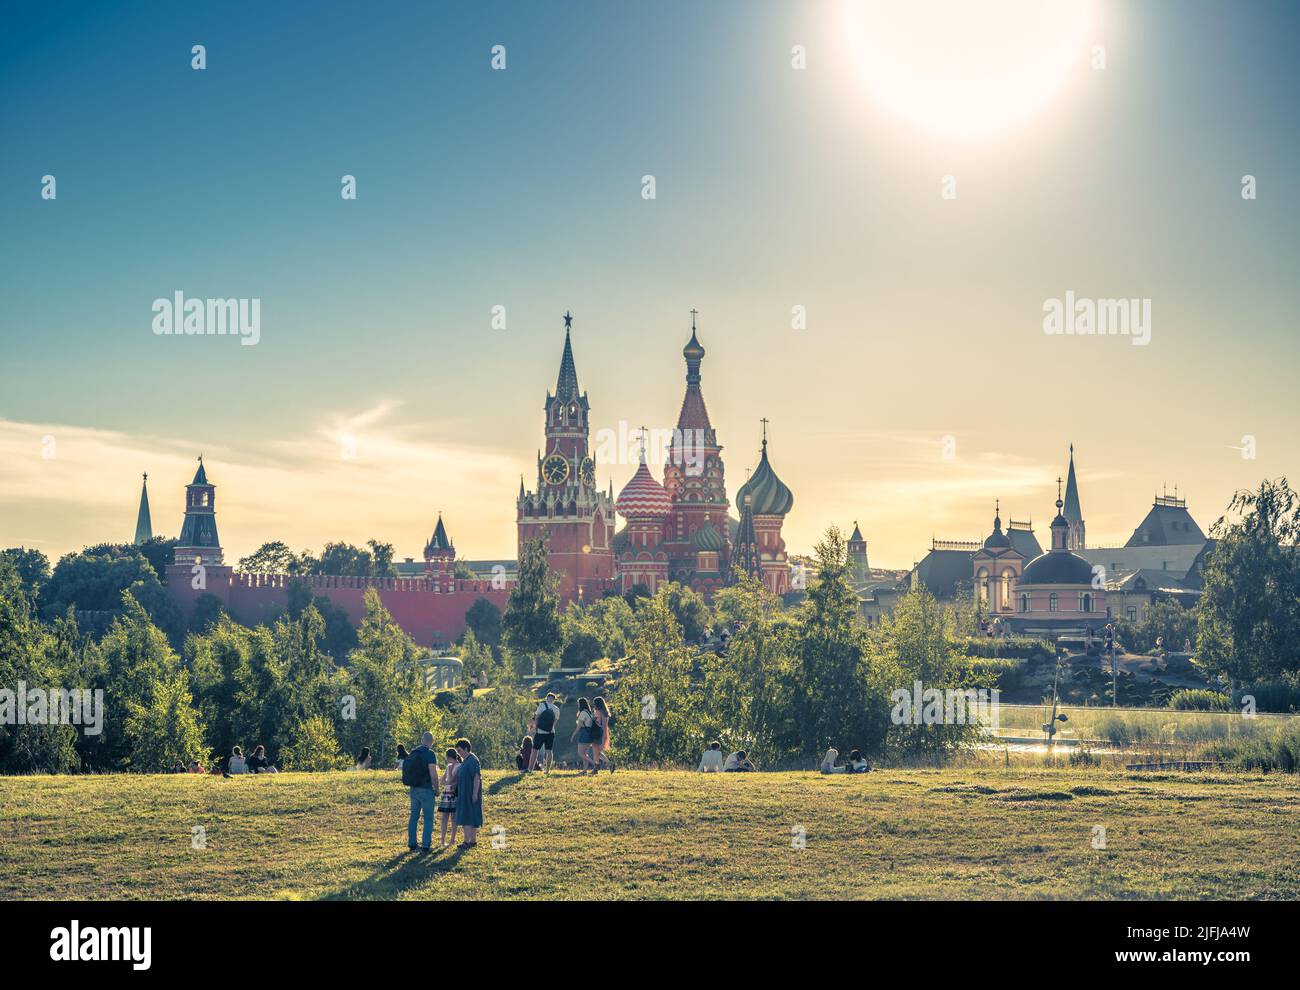 Moscú - Jun 28, 2022: La gente descansa en el Parque Zaryadye en Moscú, Rusia. Este bonito lugar es la atracción turística de Moscú. Vista soleada de la Catedral de San Basilio Foto de stock